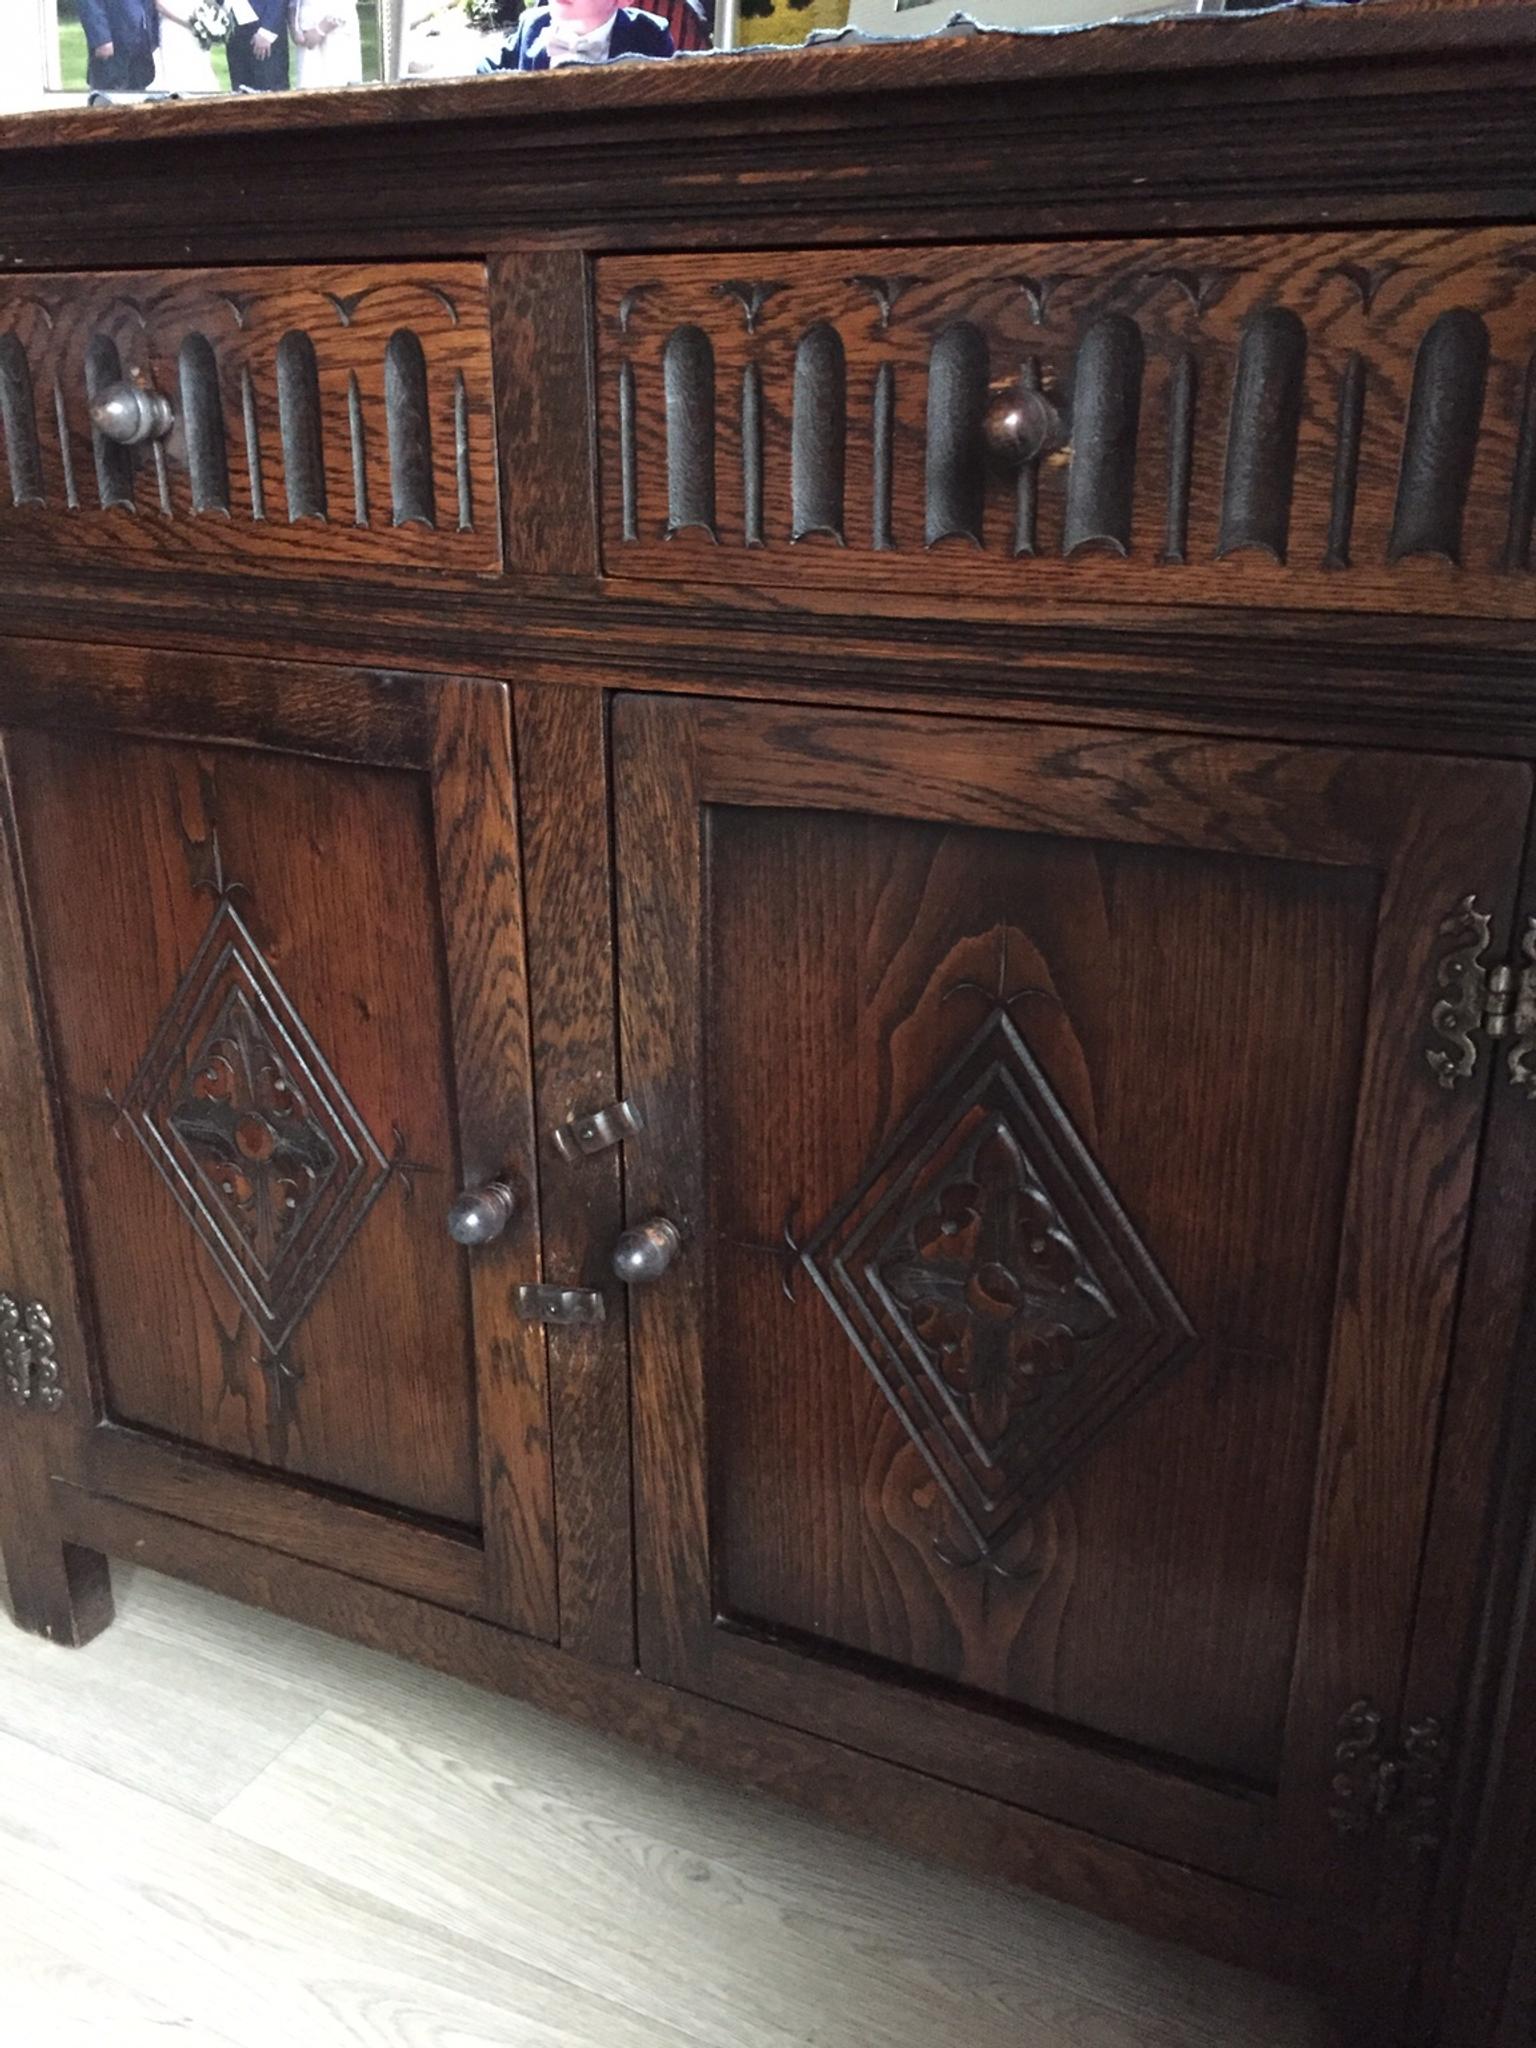 Antique Welsh Dresser In S44 Bolsover Fur 80 00 Zum Verkauf